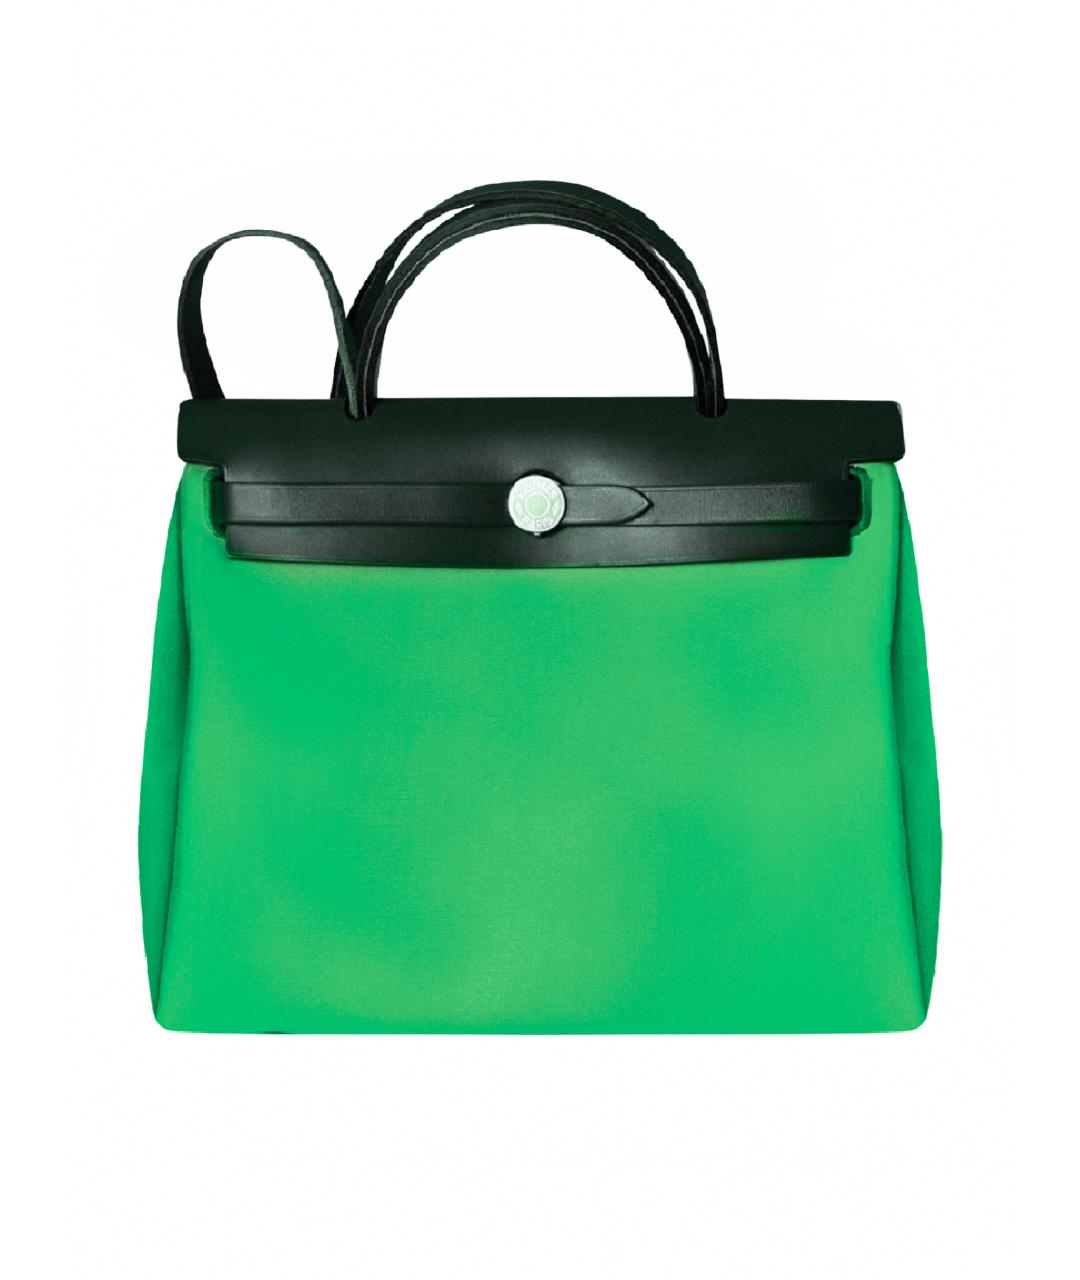 HERMES PRE-OWNED Зеленая тканевая сумка с короткими ручками, фото 1